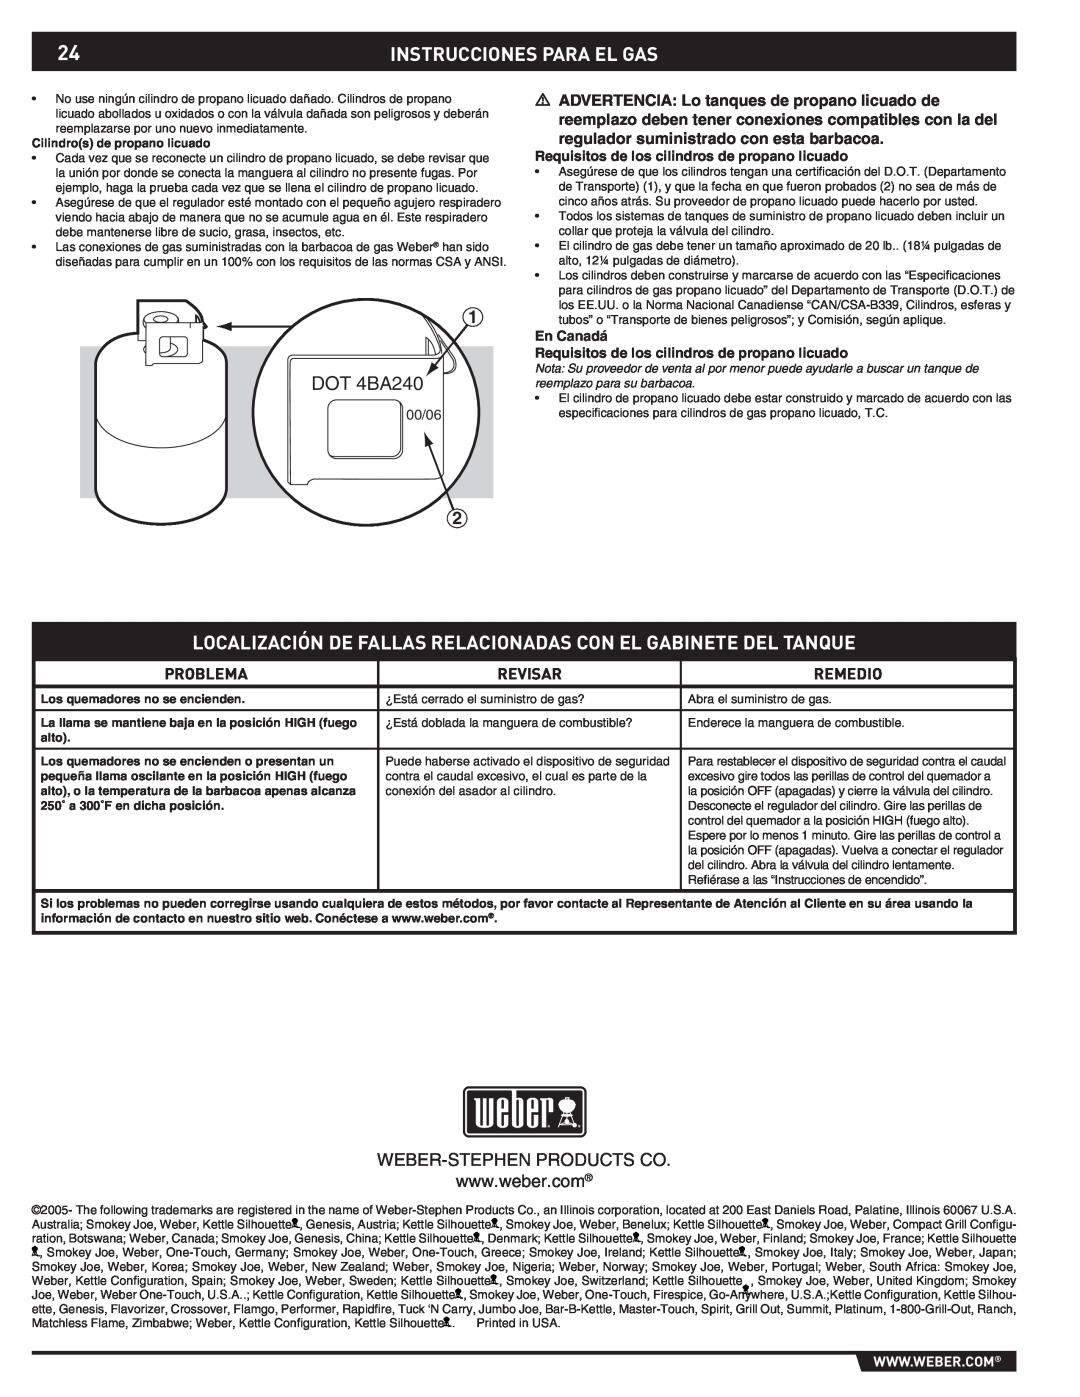 Summit 43176 Instrucciones Para El Gas, DOT 4BA240, 00/06, Requisitos de los cilindros de propano licuado, En Canadá, alto 